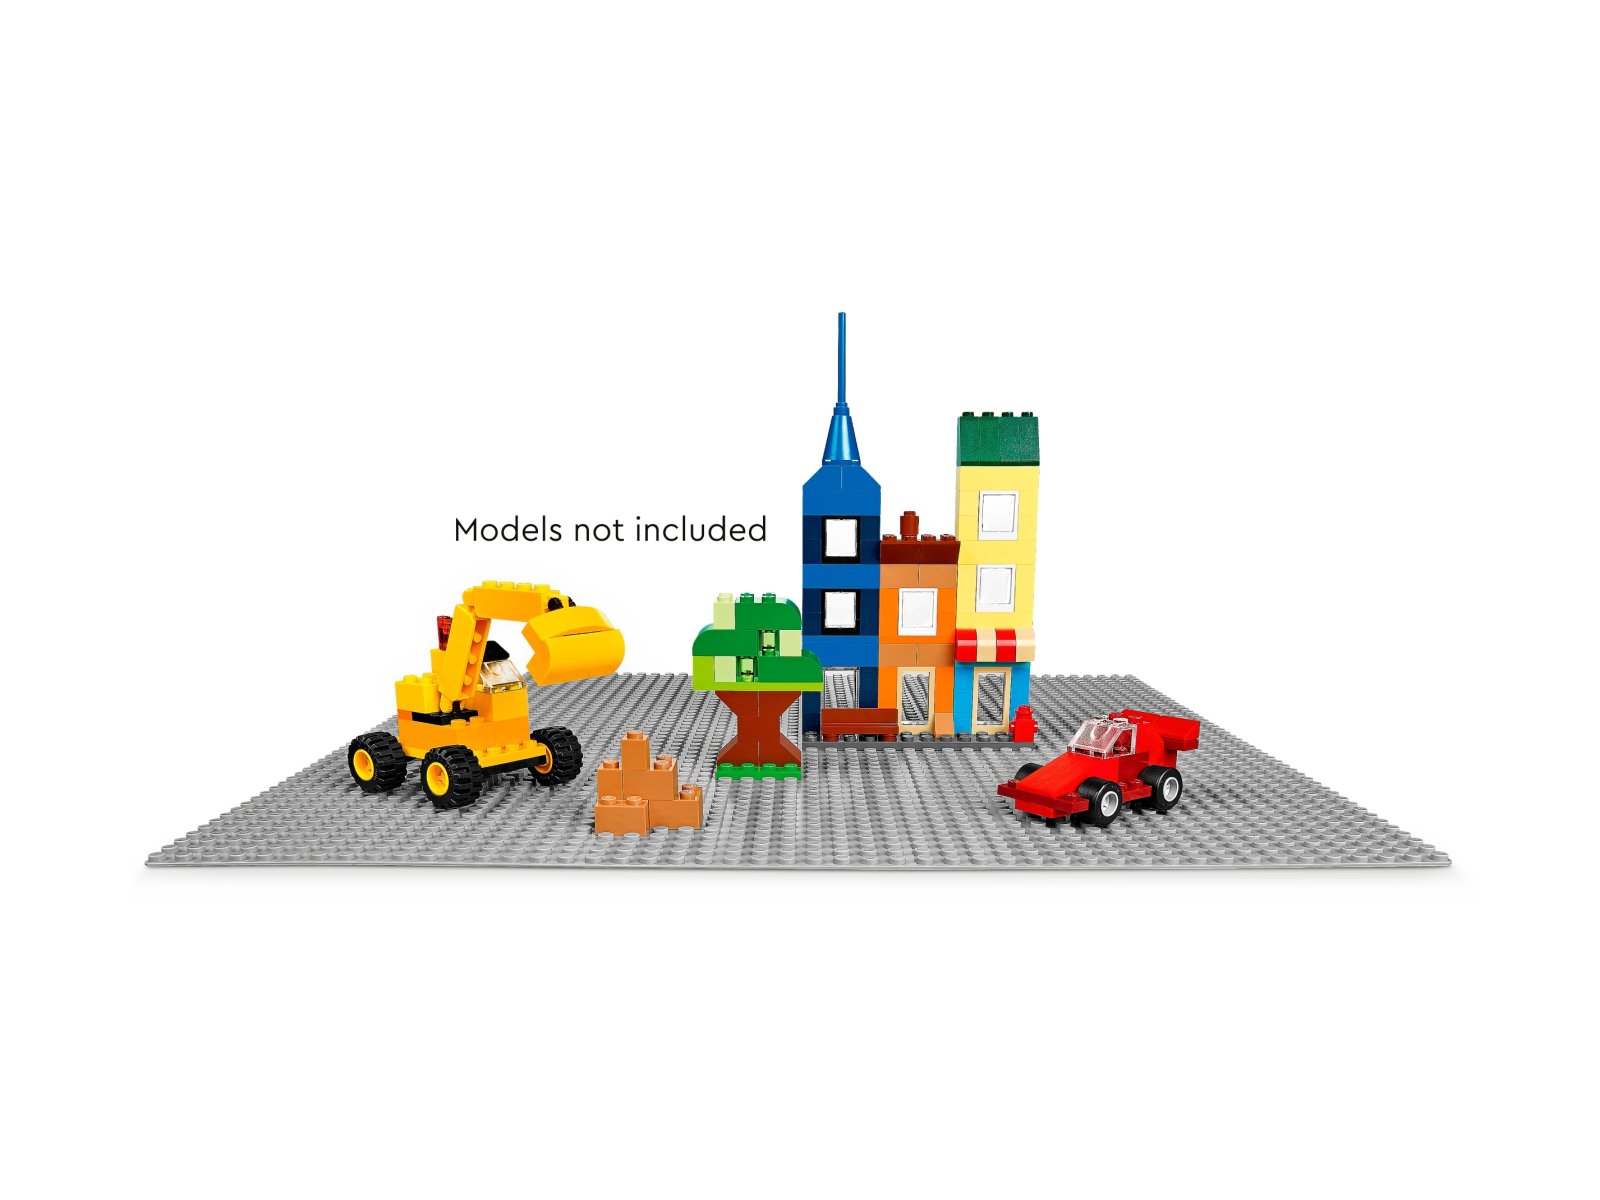 LEGO 11024 Szara płytka konstrukcyjna